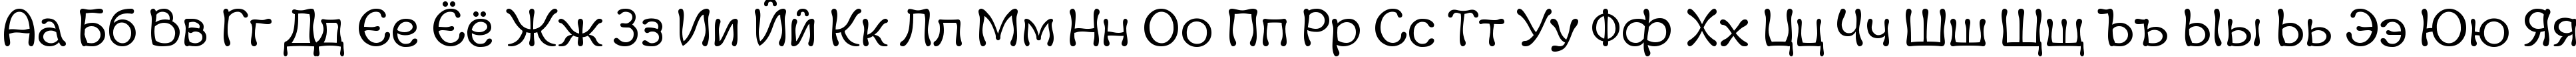 Пример написания русского алфавита шрифтом Margot